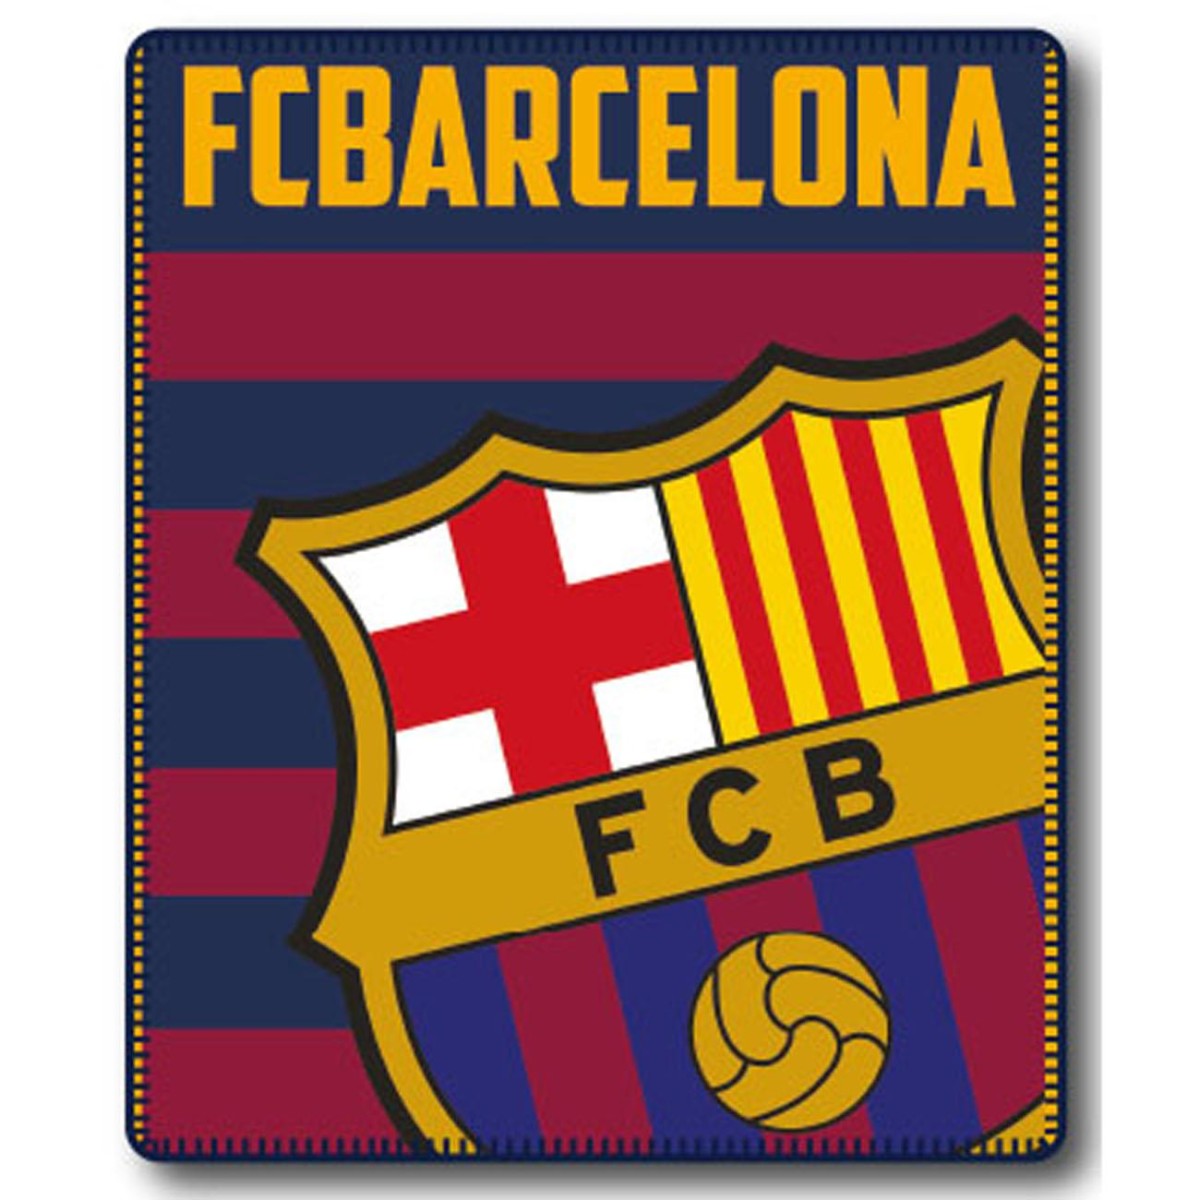 Manta tipo plaid de 110 x 140 cm CTI Manta oficial del FC Barcelona 044930 fabricada en poliéster con los colores azul y grana 